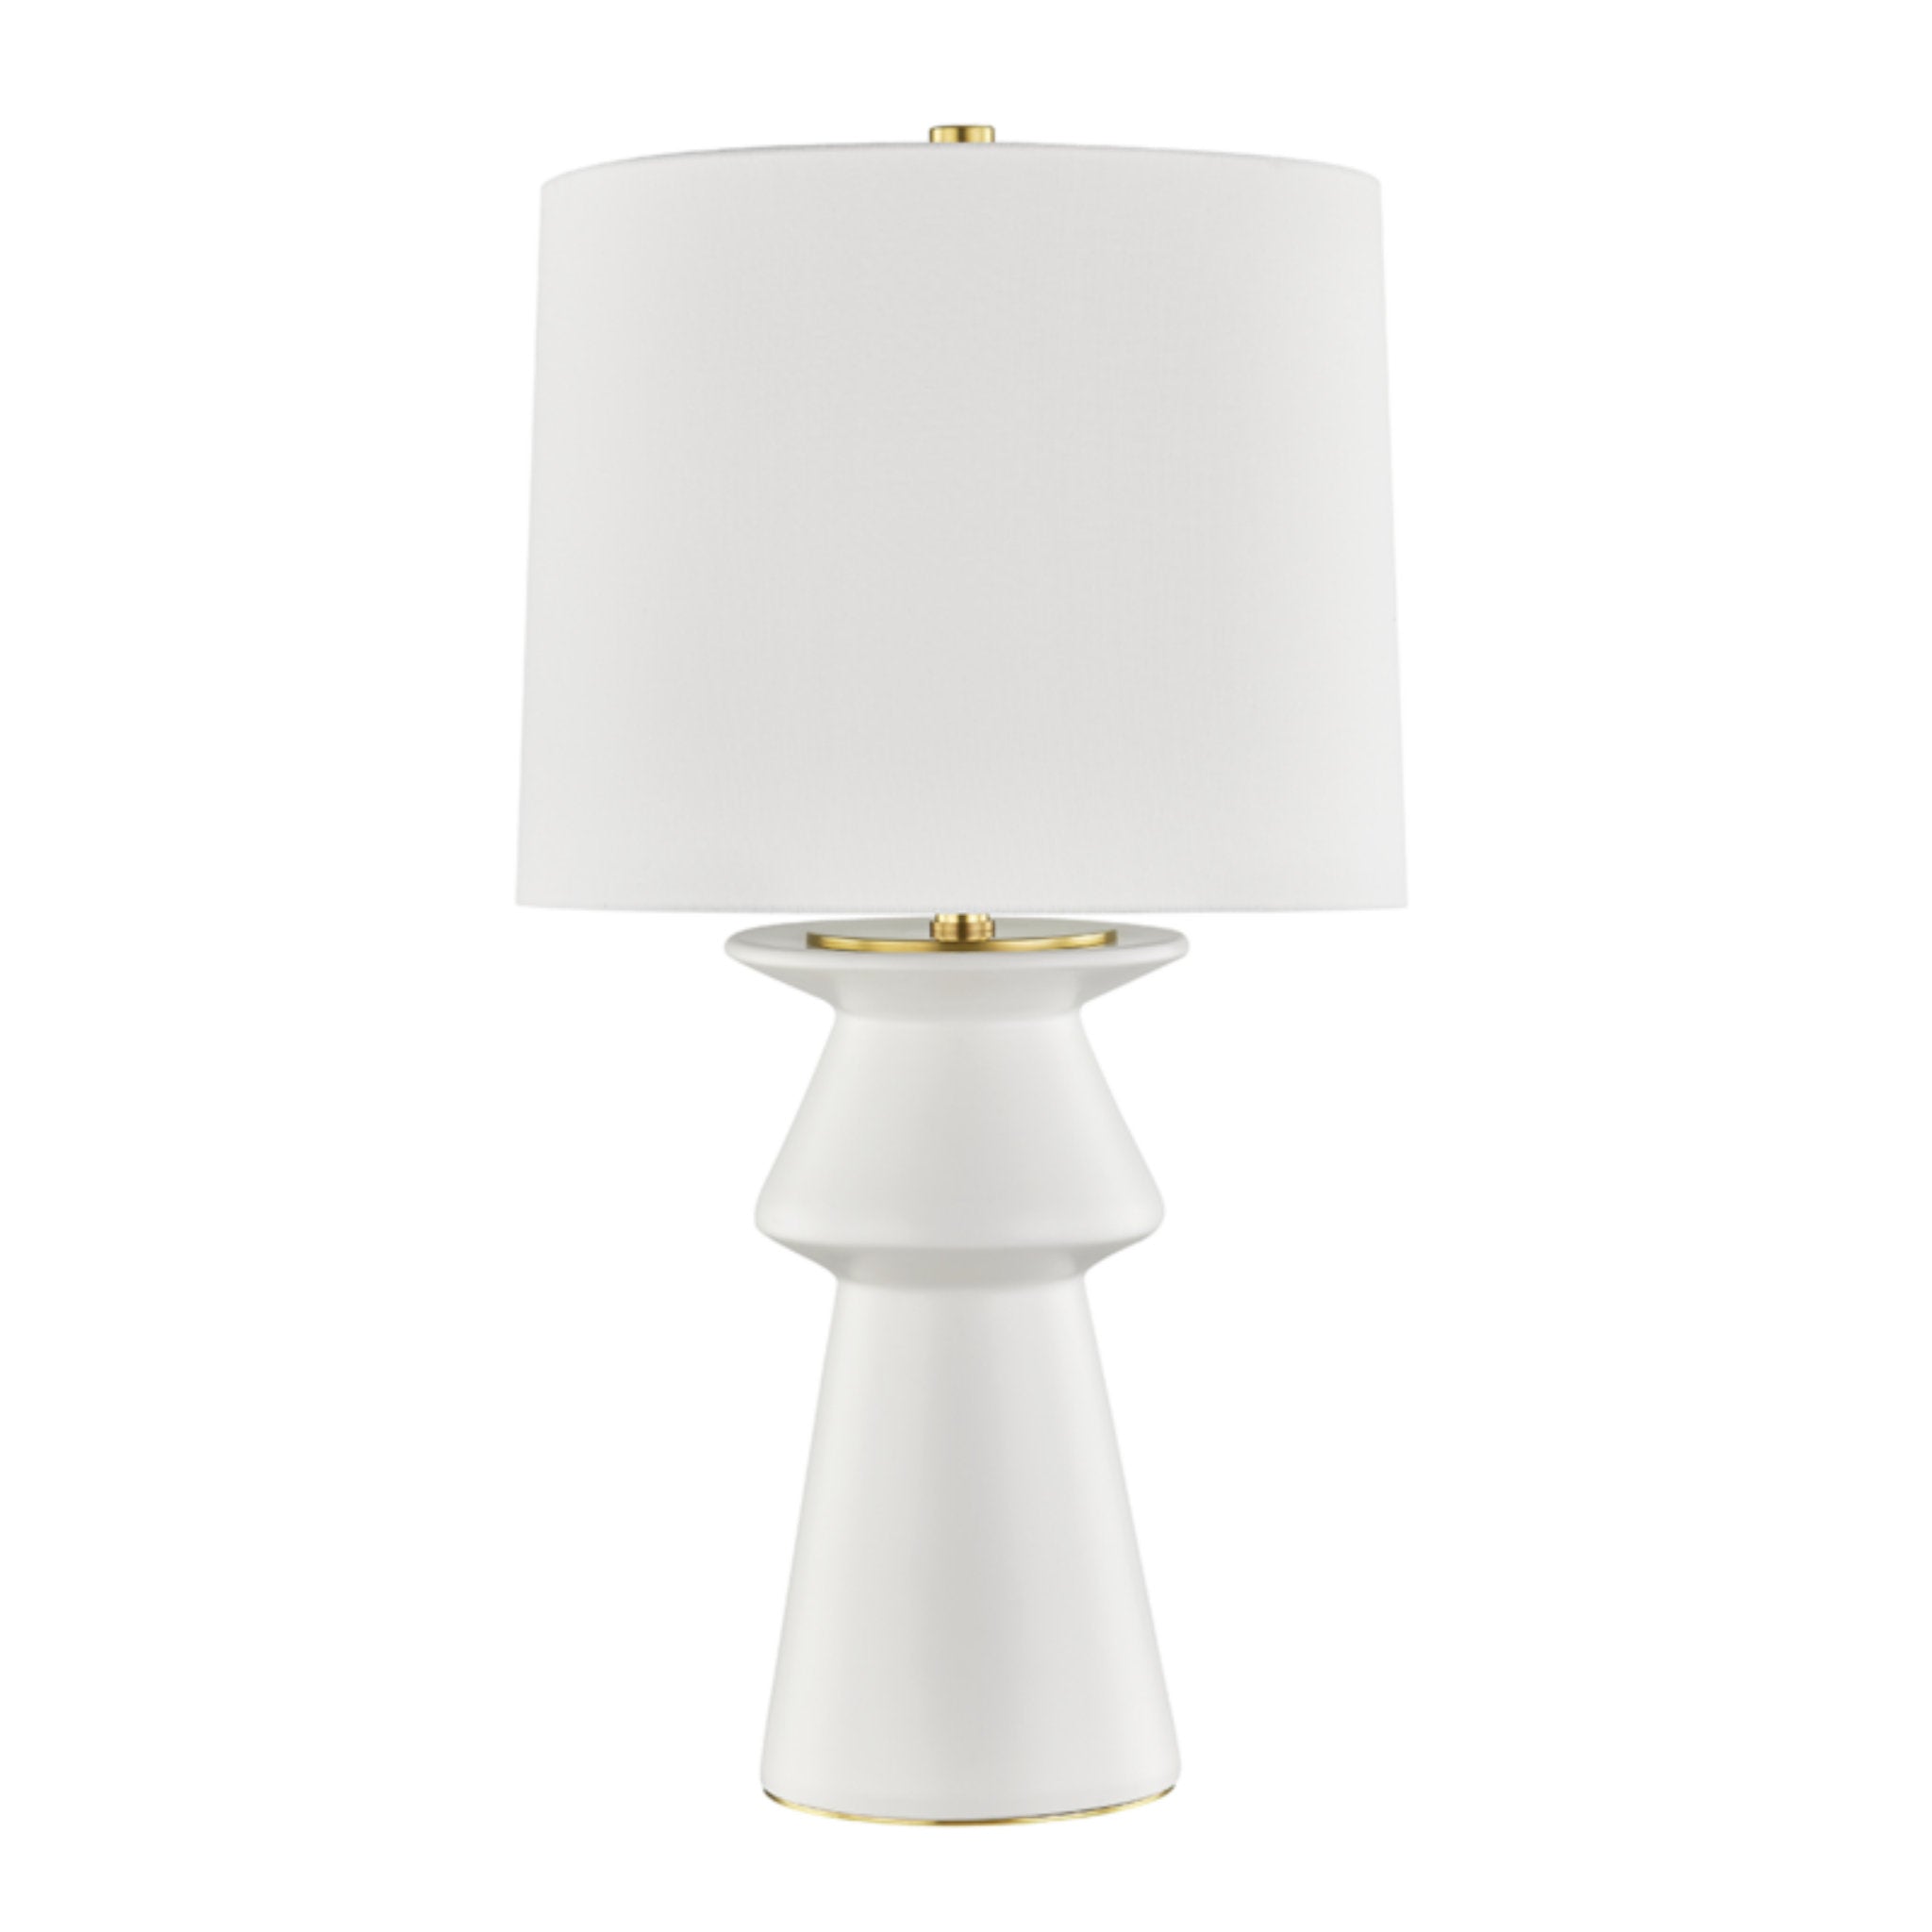 Amagansett 1 Light Table Lamp in Ivory